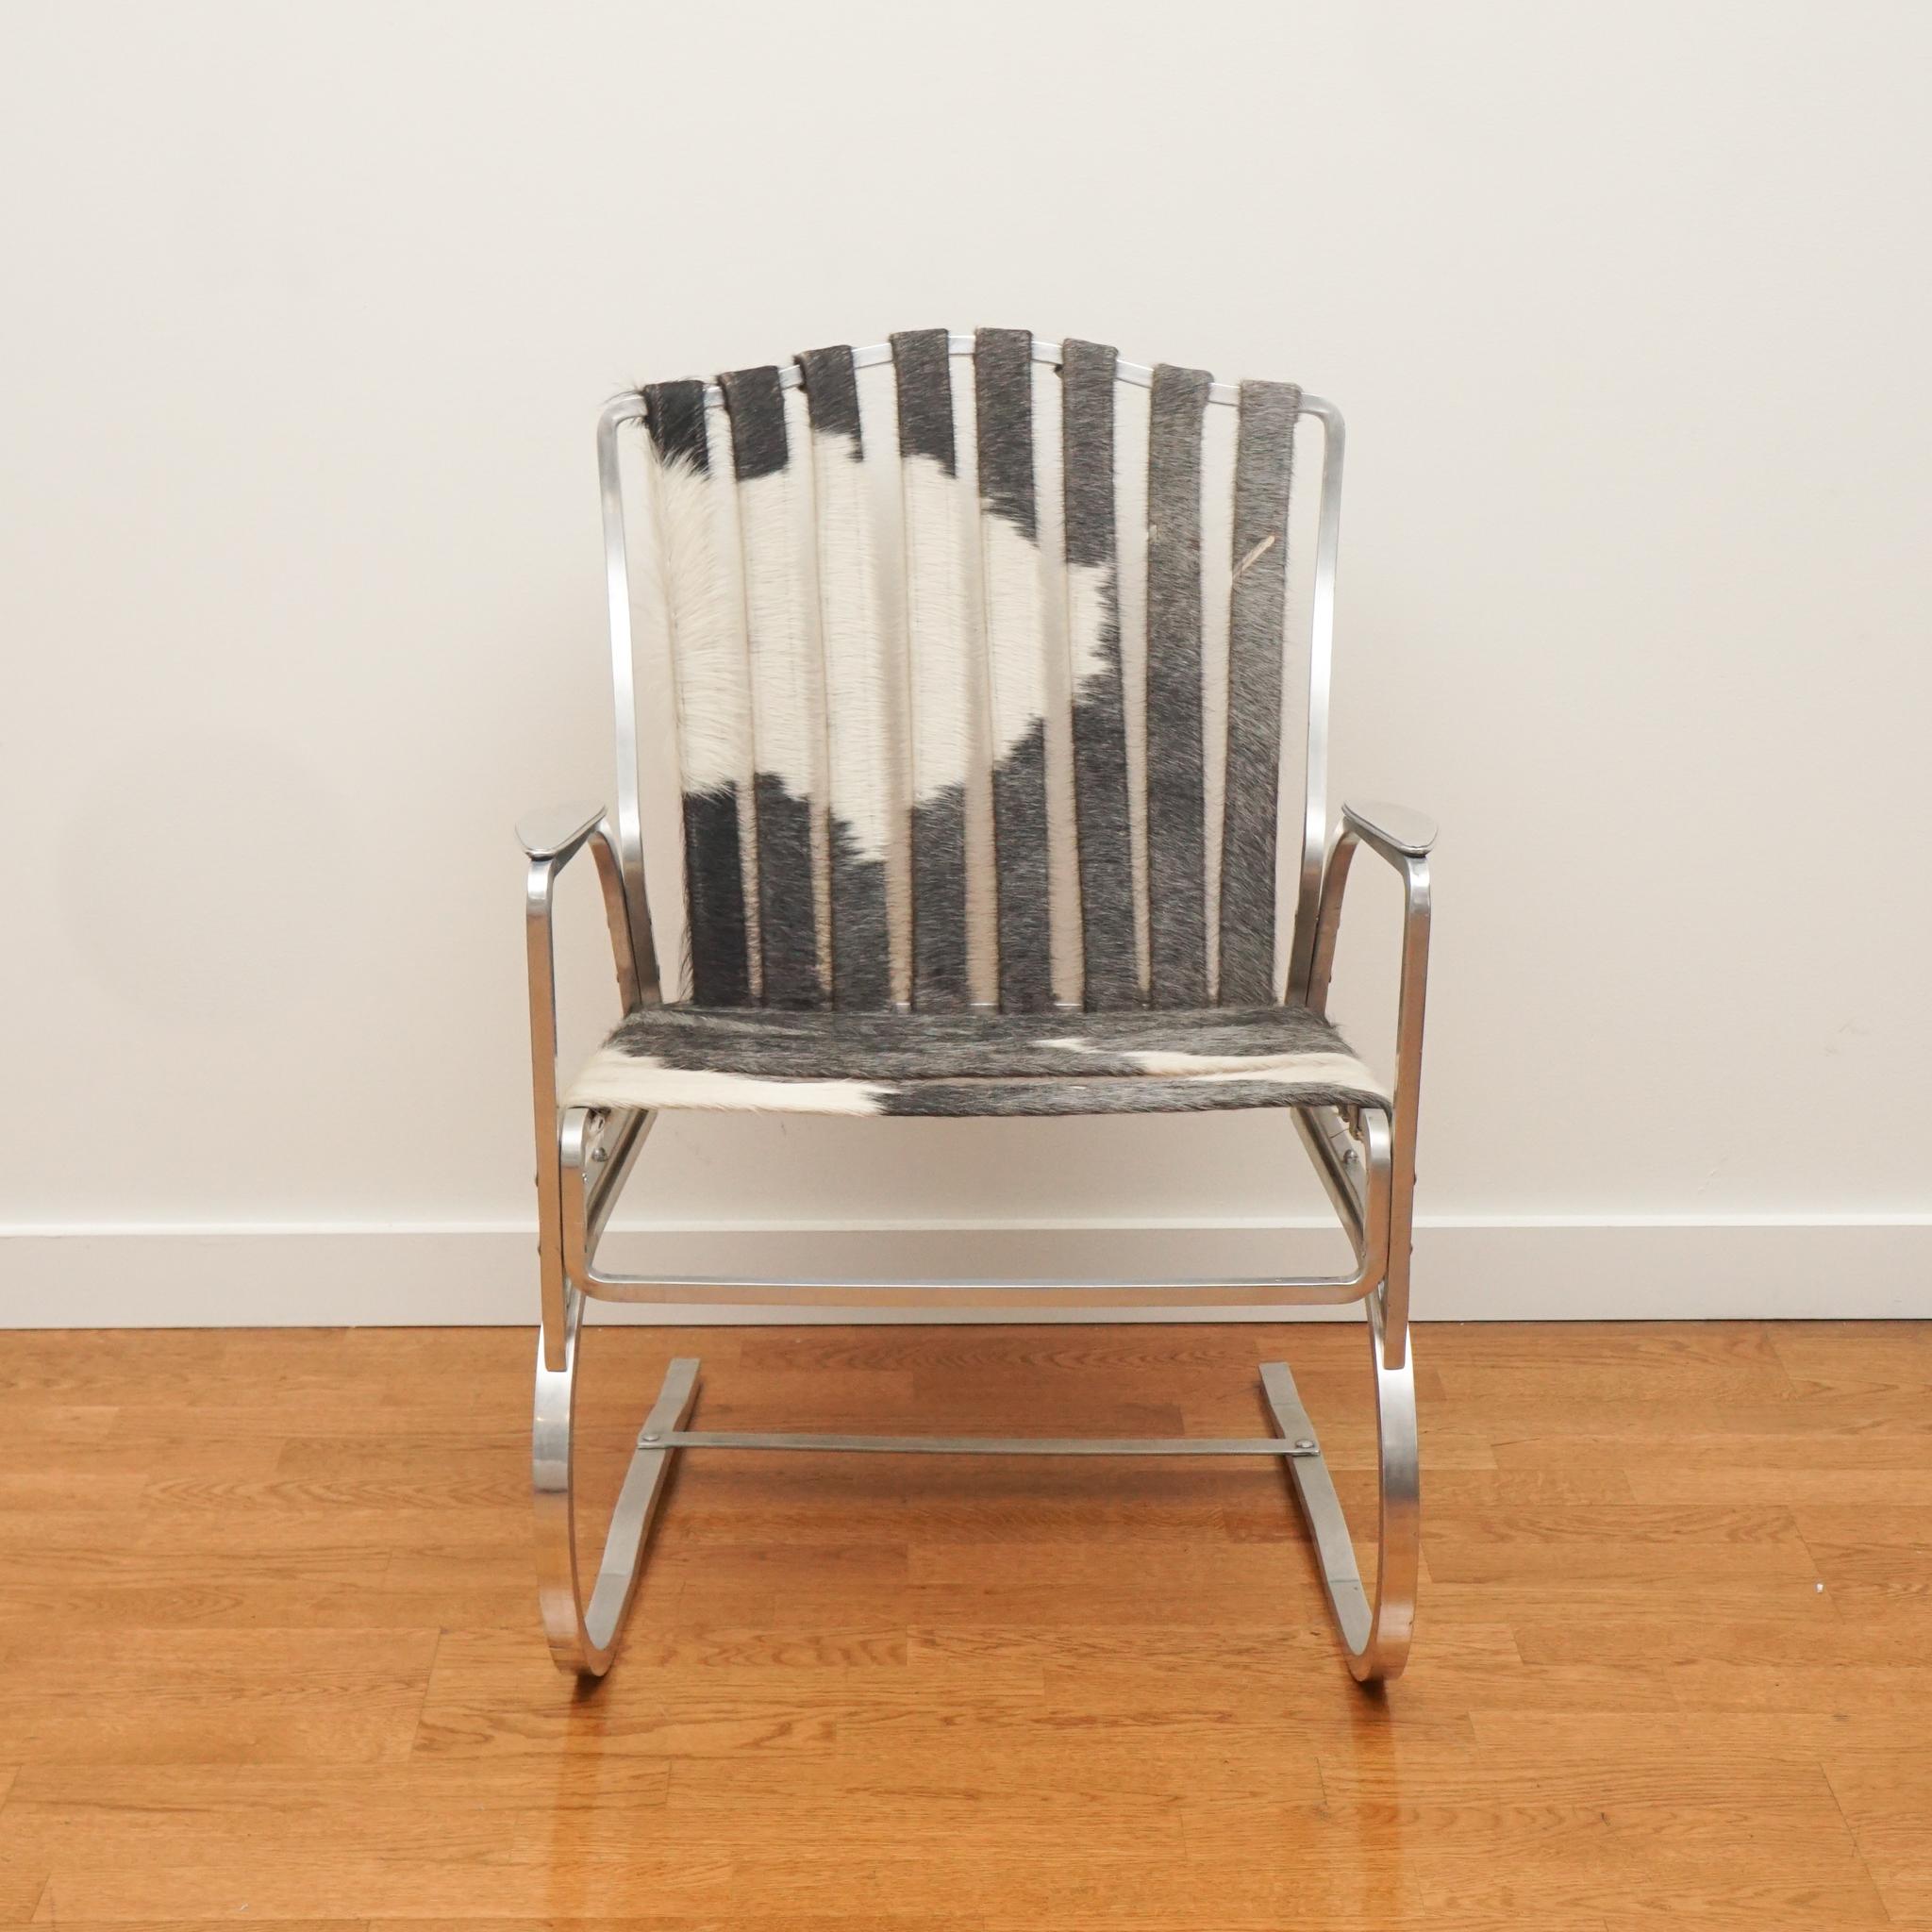 Der hier gezeigte Aluminiumsessel mit Kuhfellriemen stammt aus den 1950er Jahren. Trotz seines Alters ist der Stuhl in sehr gutem Zustand - vom Aluminiumrahmen bis zu den Rindslederriemen, die original zum Stuhl gehören. Wenn Sie auf der Suche nach